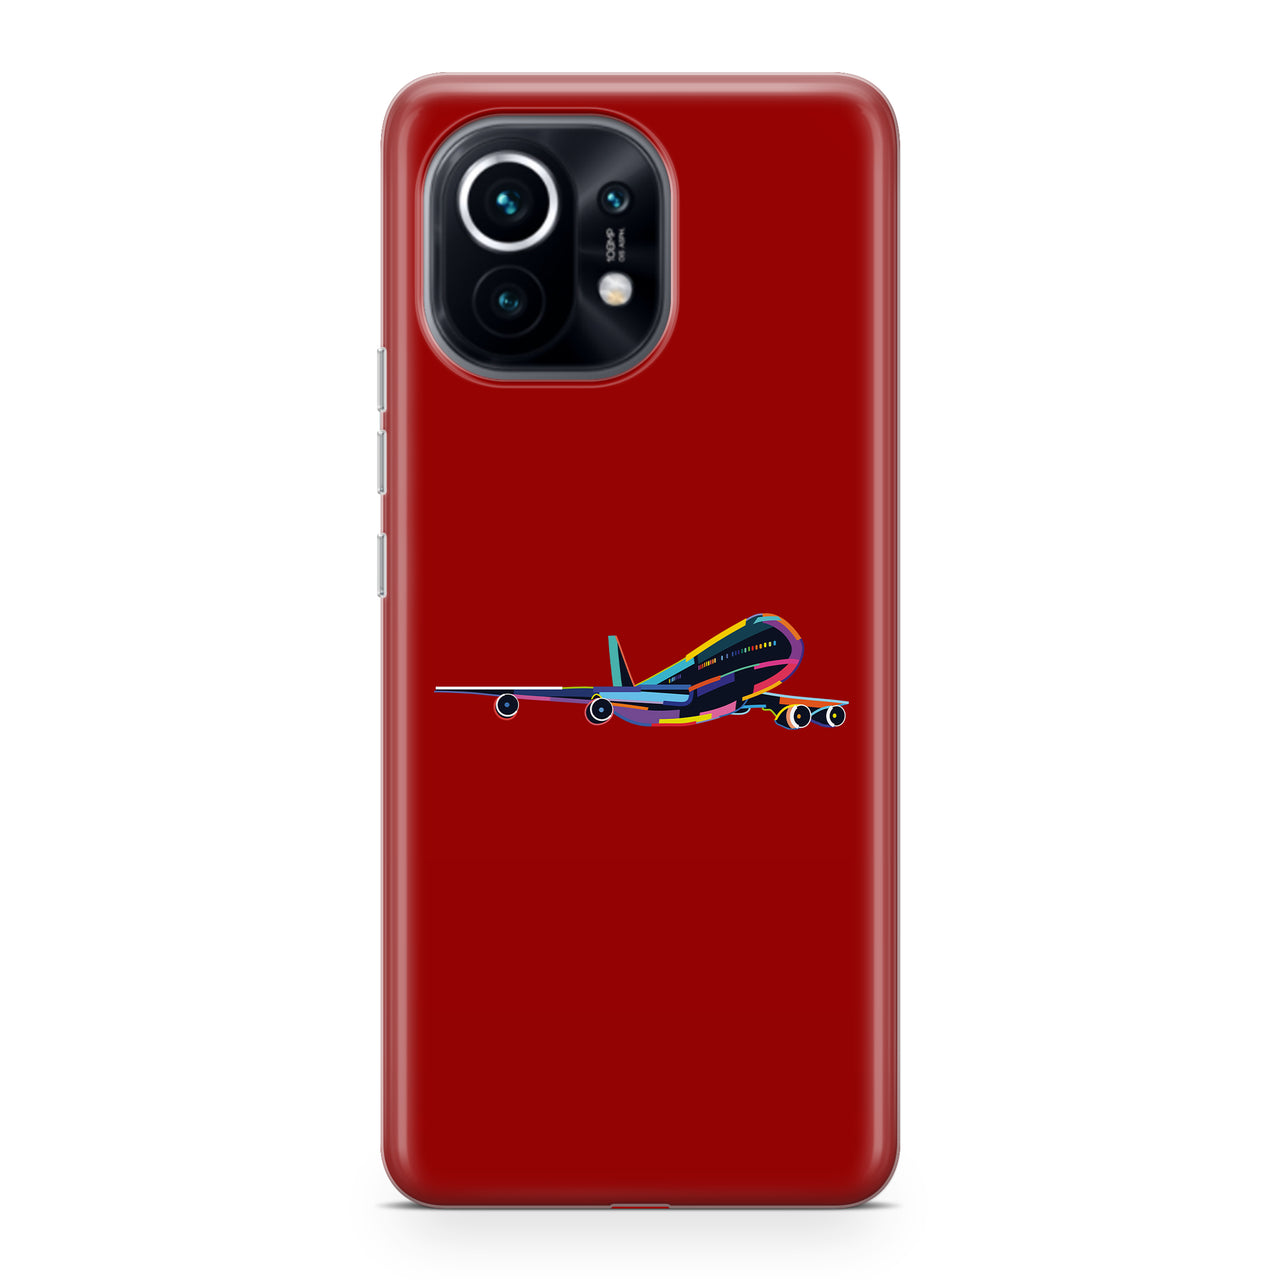 Multicolor Airplane Designed Xiaomi Cases